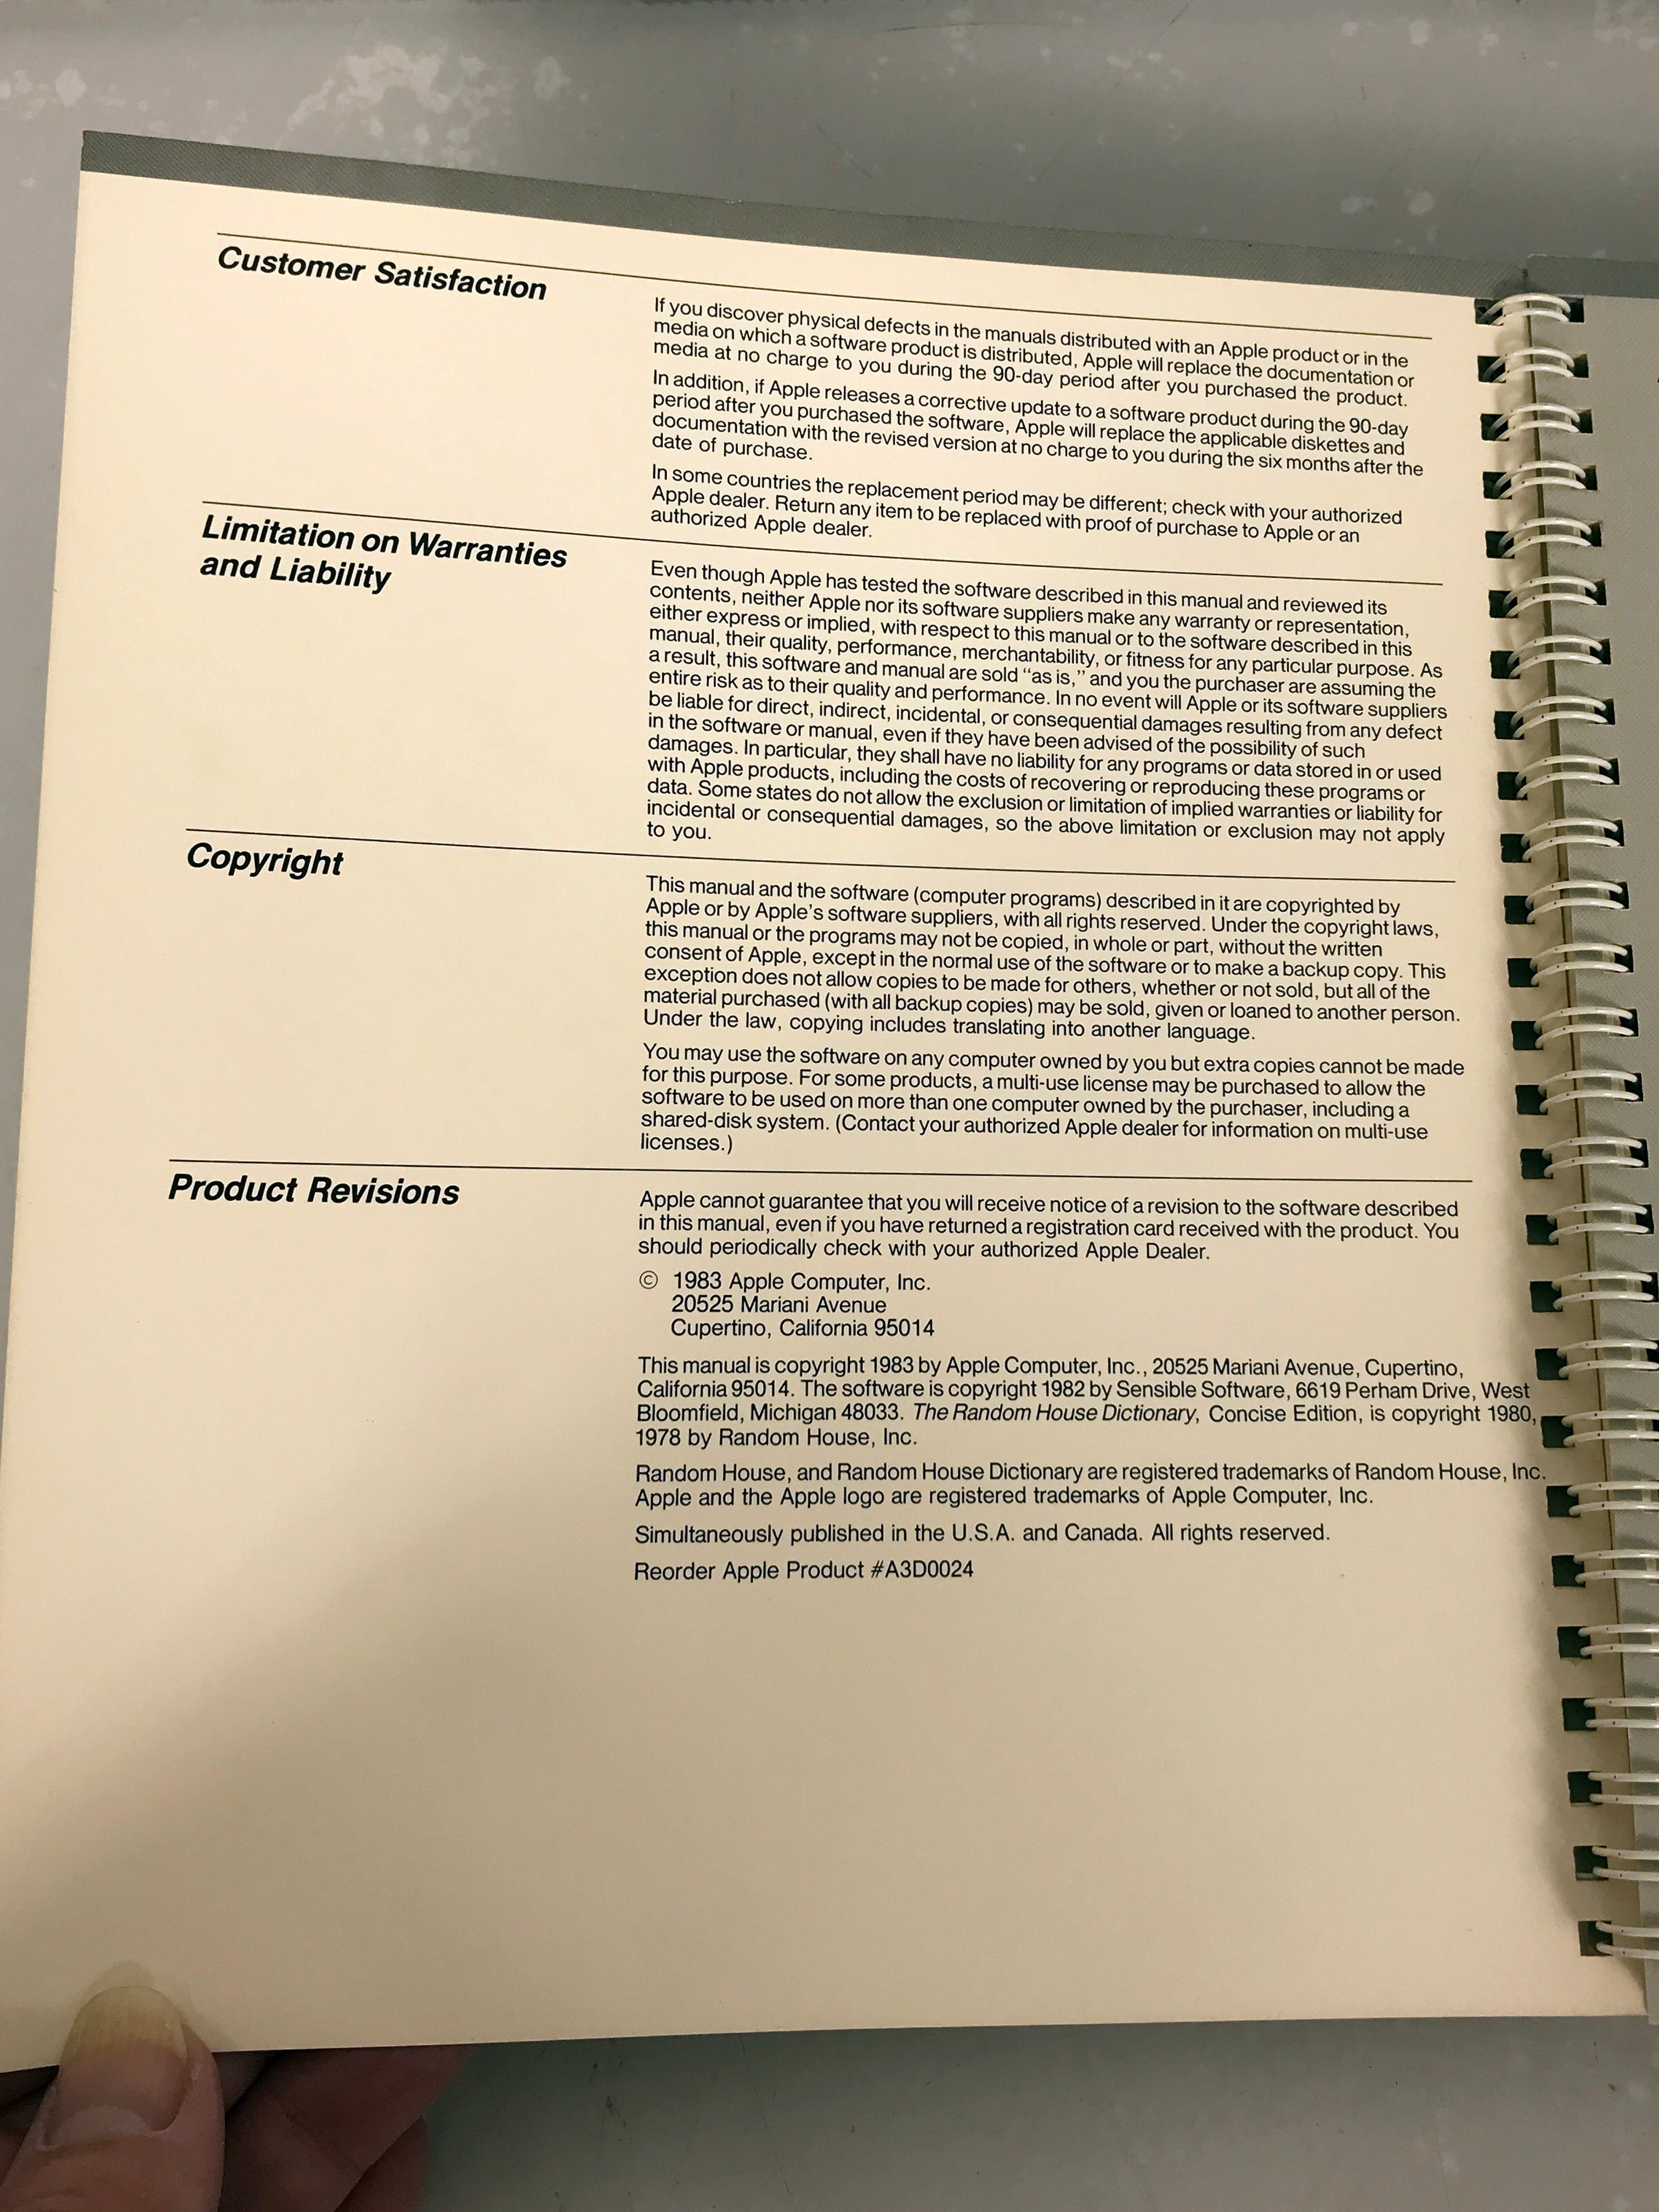 Apple Speller 3 User Manuals 1983